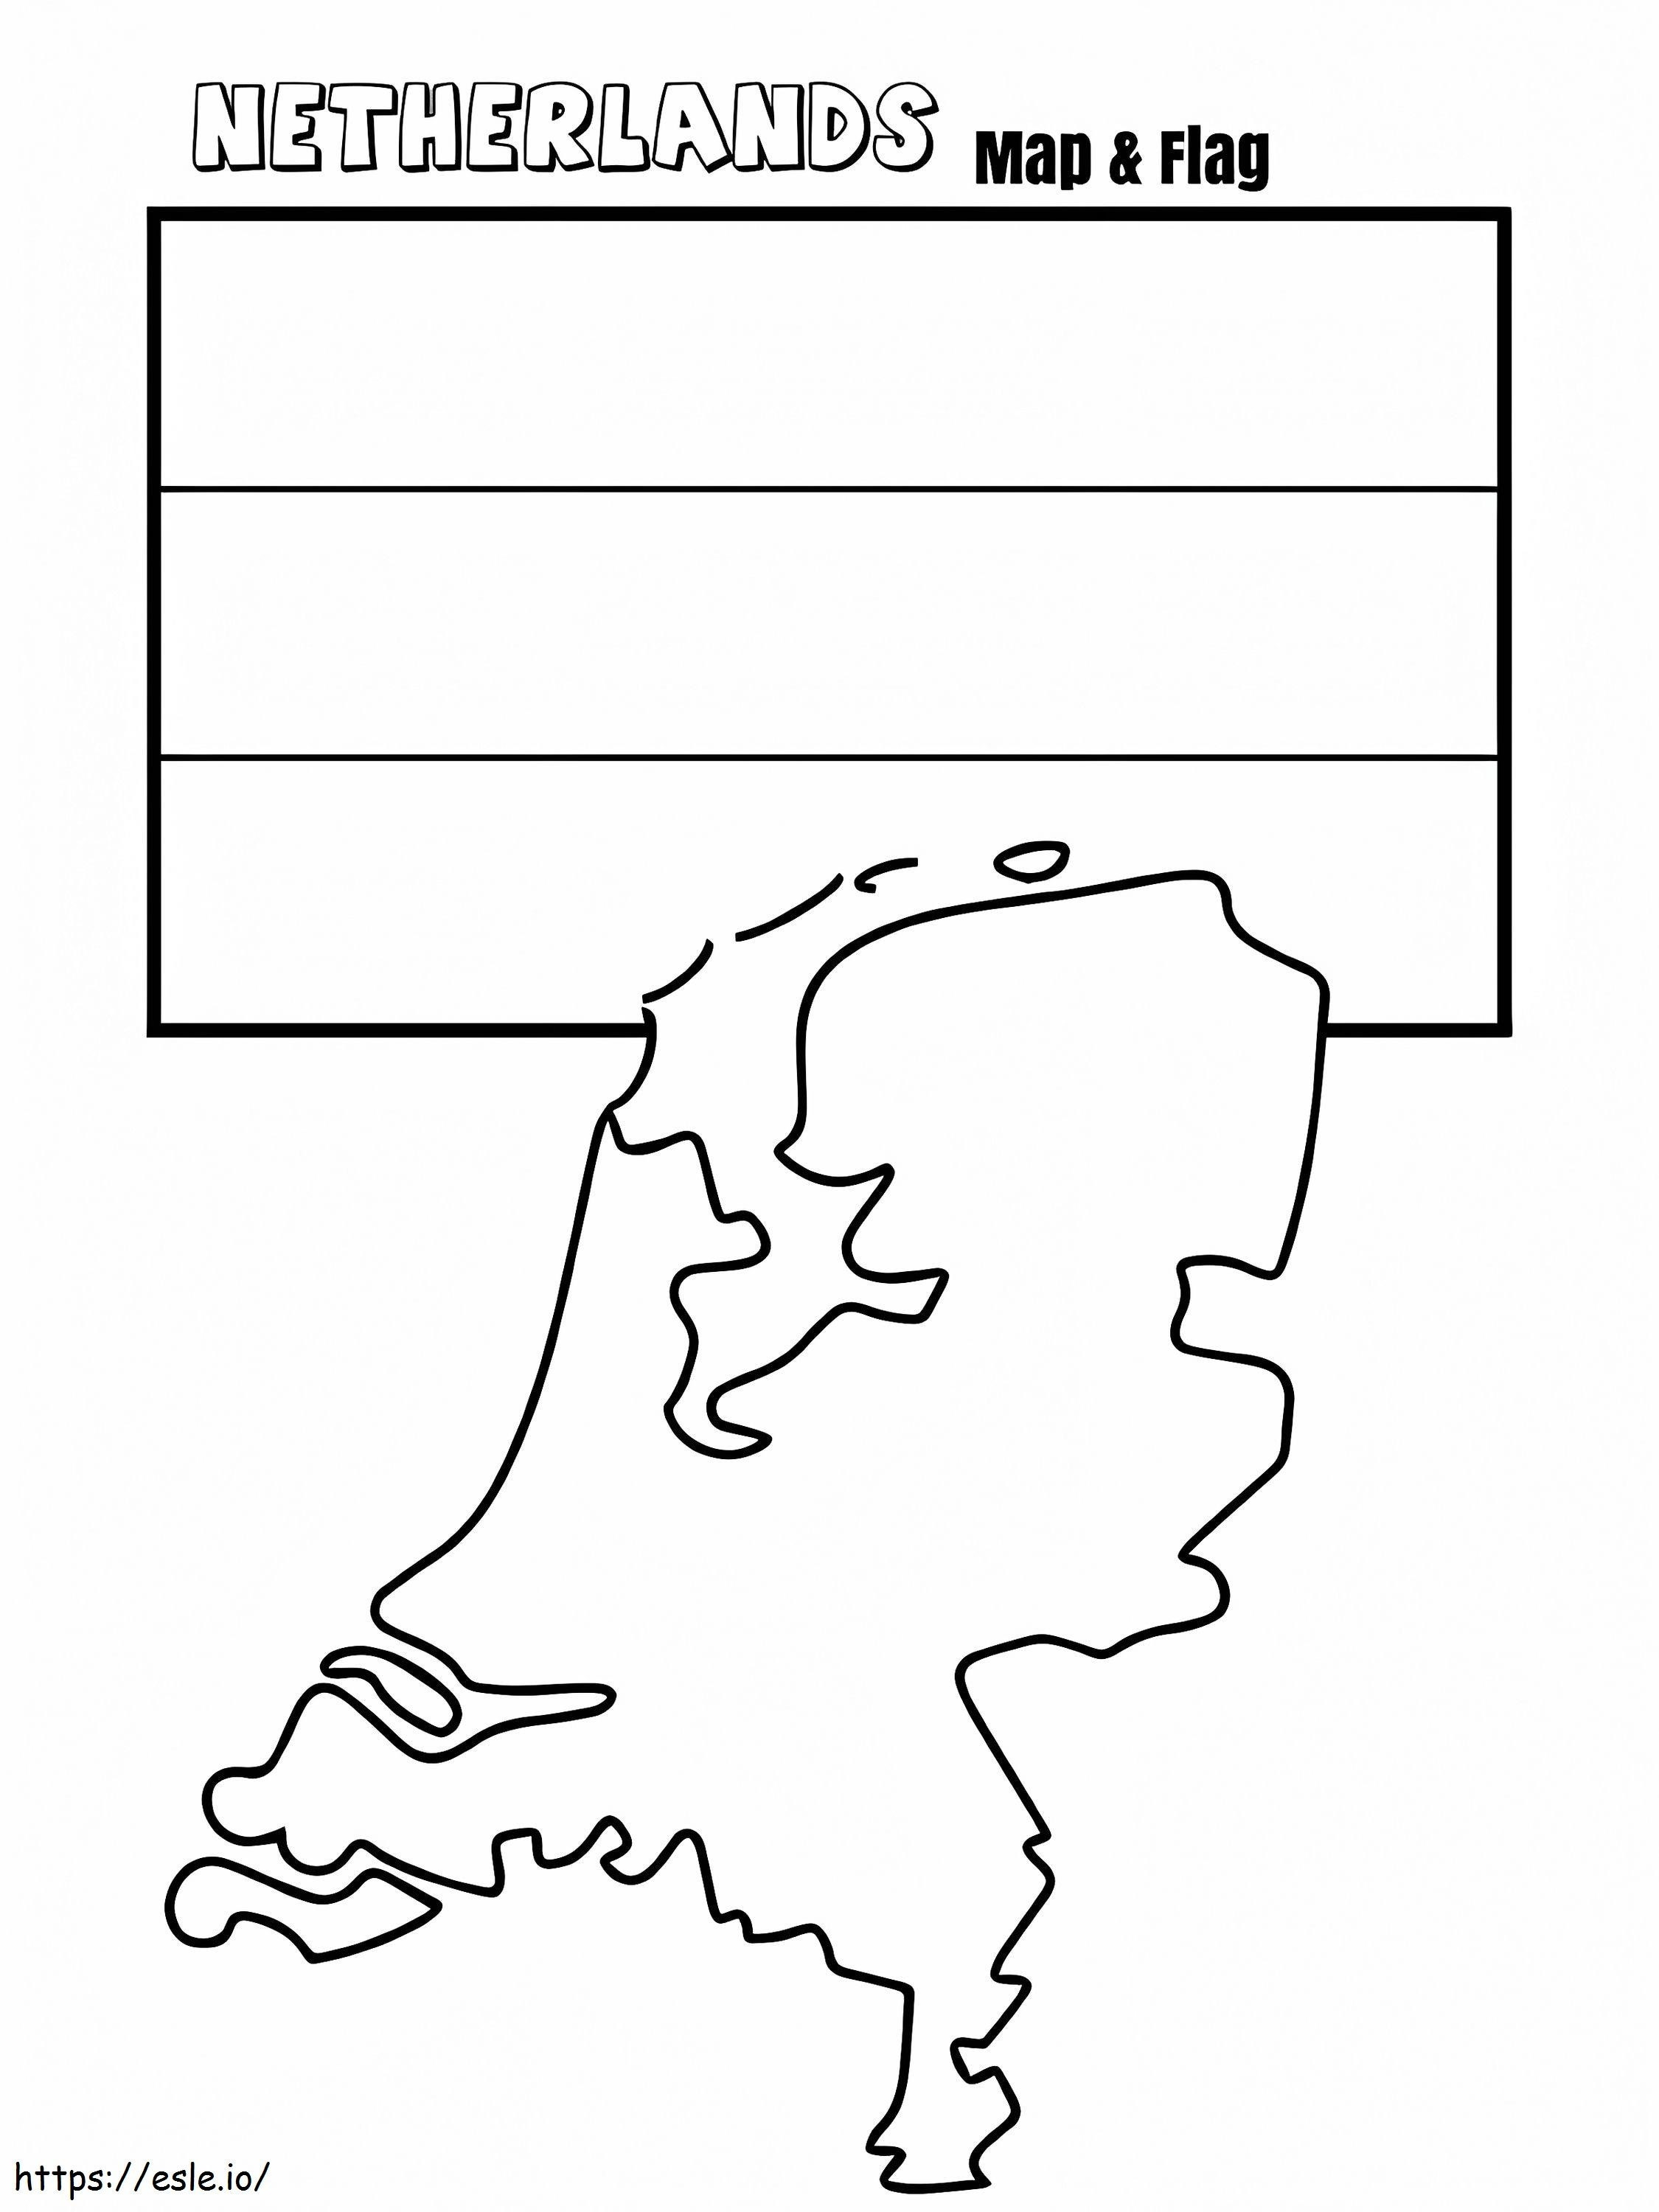 Mappa e bandiera dei Paesi Bassi da colorare